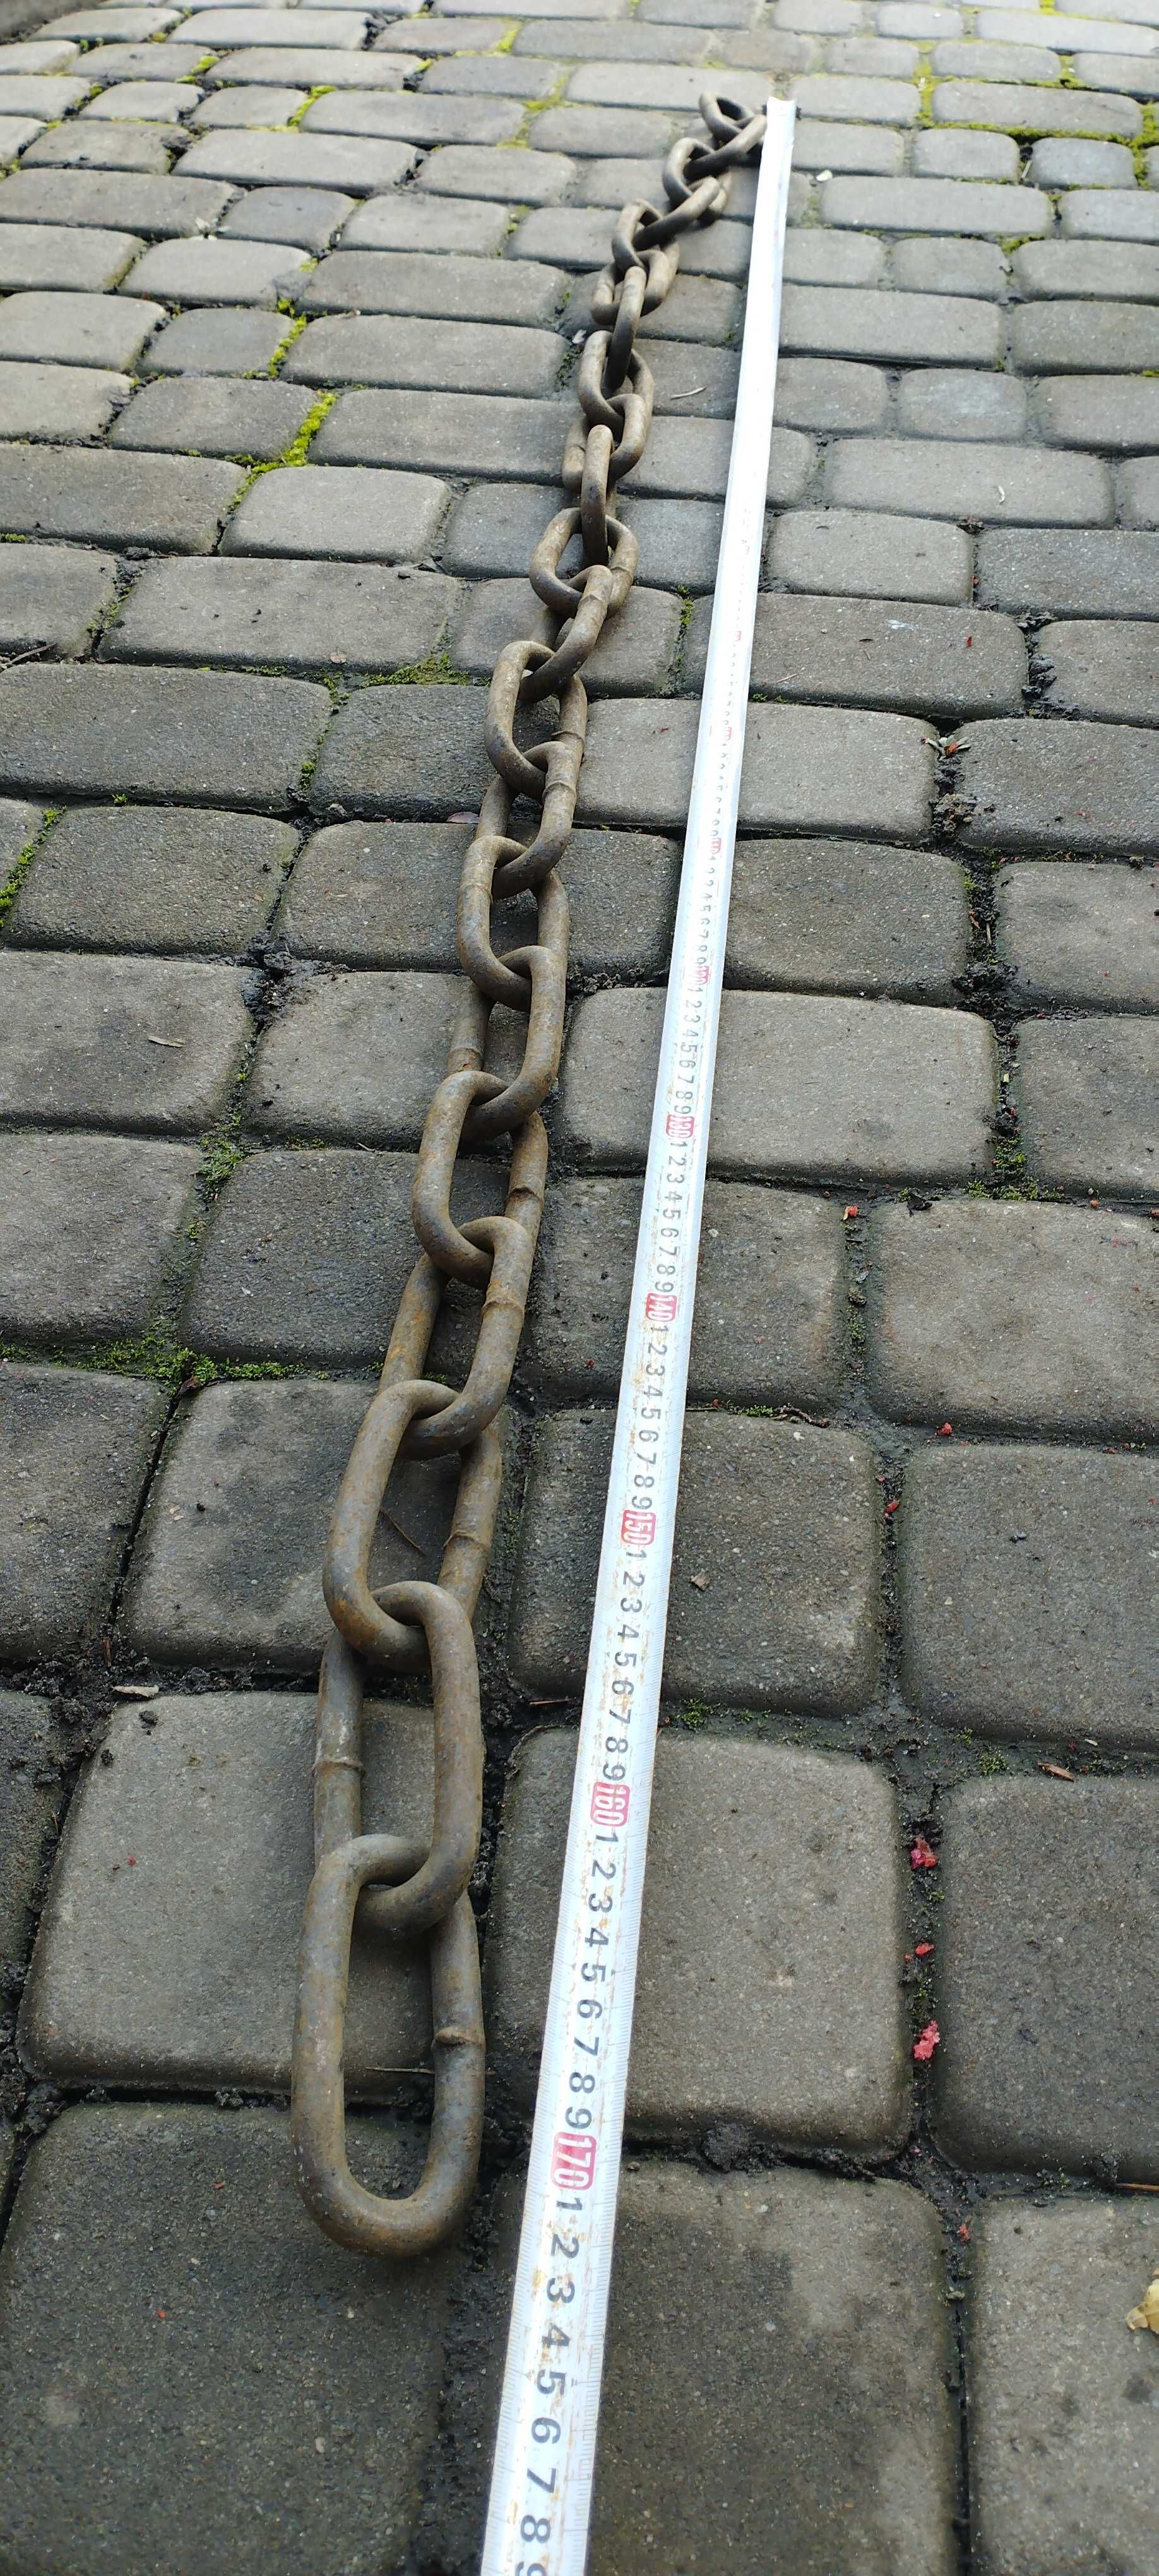 Łańcuch  stalowy 13 mm np zabezpieczenie roweru , motoru itp , 170 cm